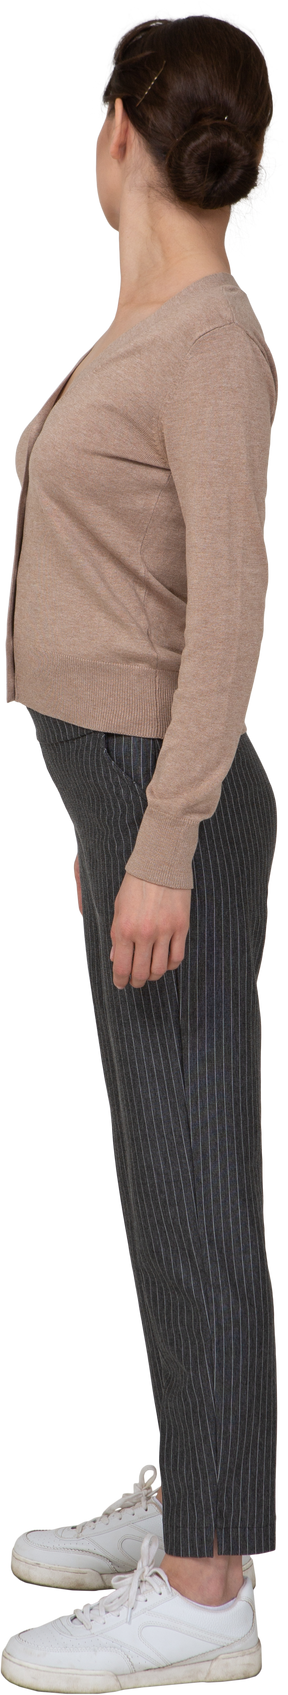 Vista lateral de uma jovem de pulôver e calças virando-se